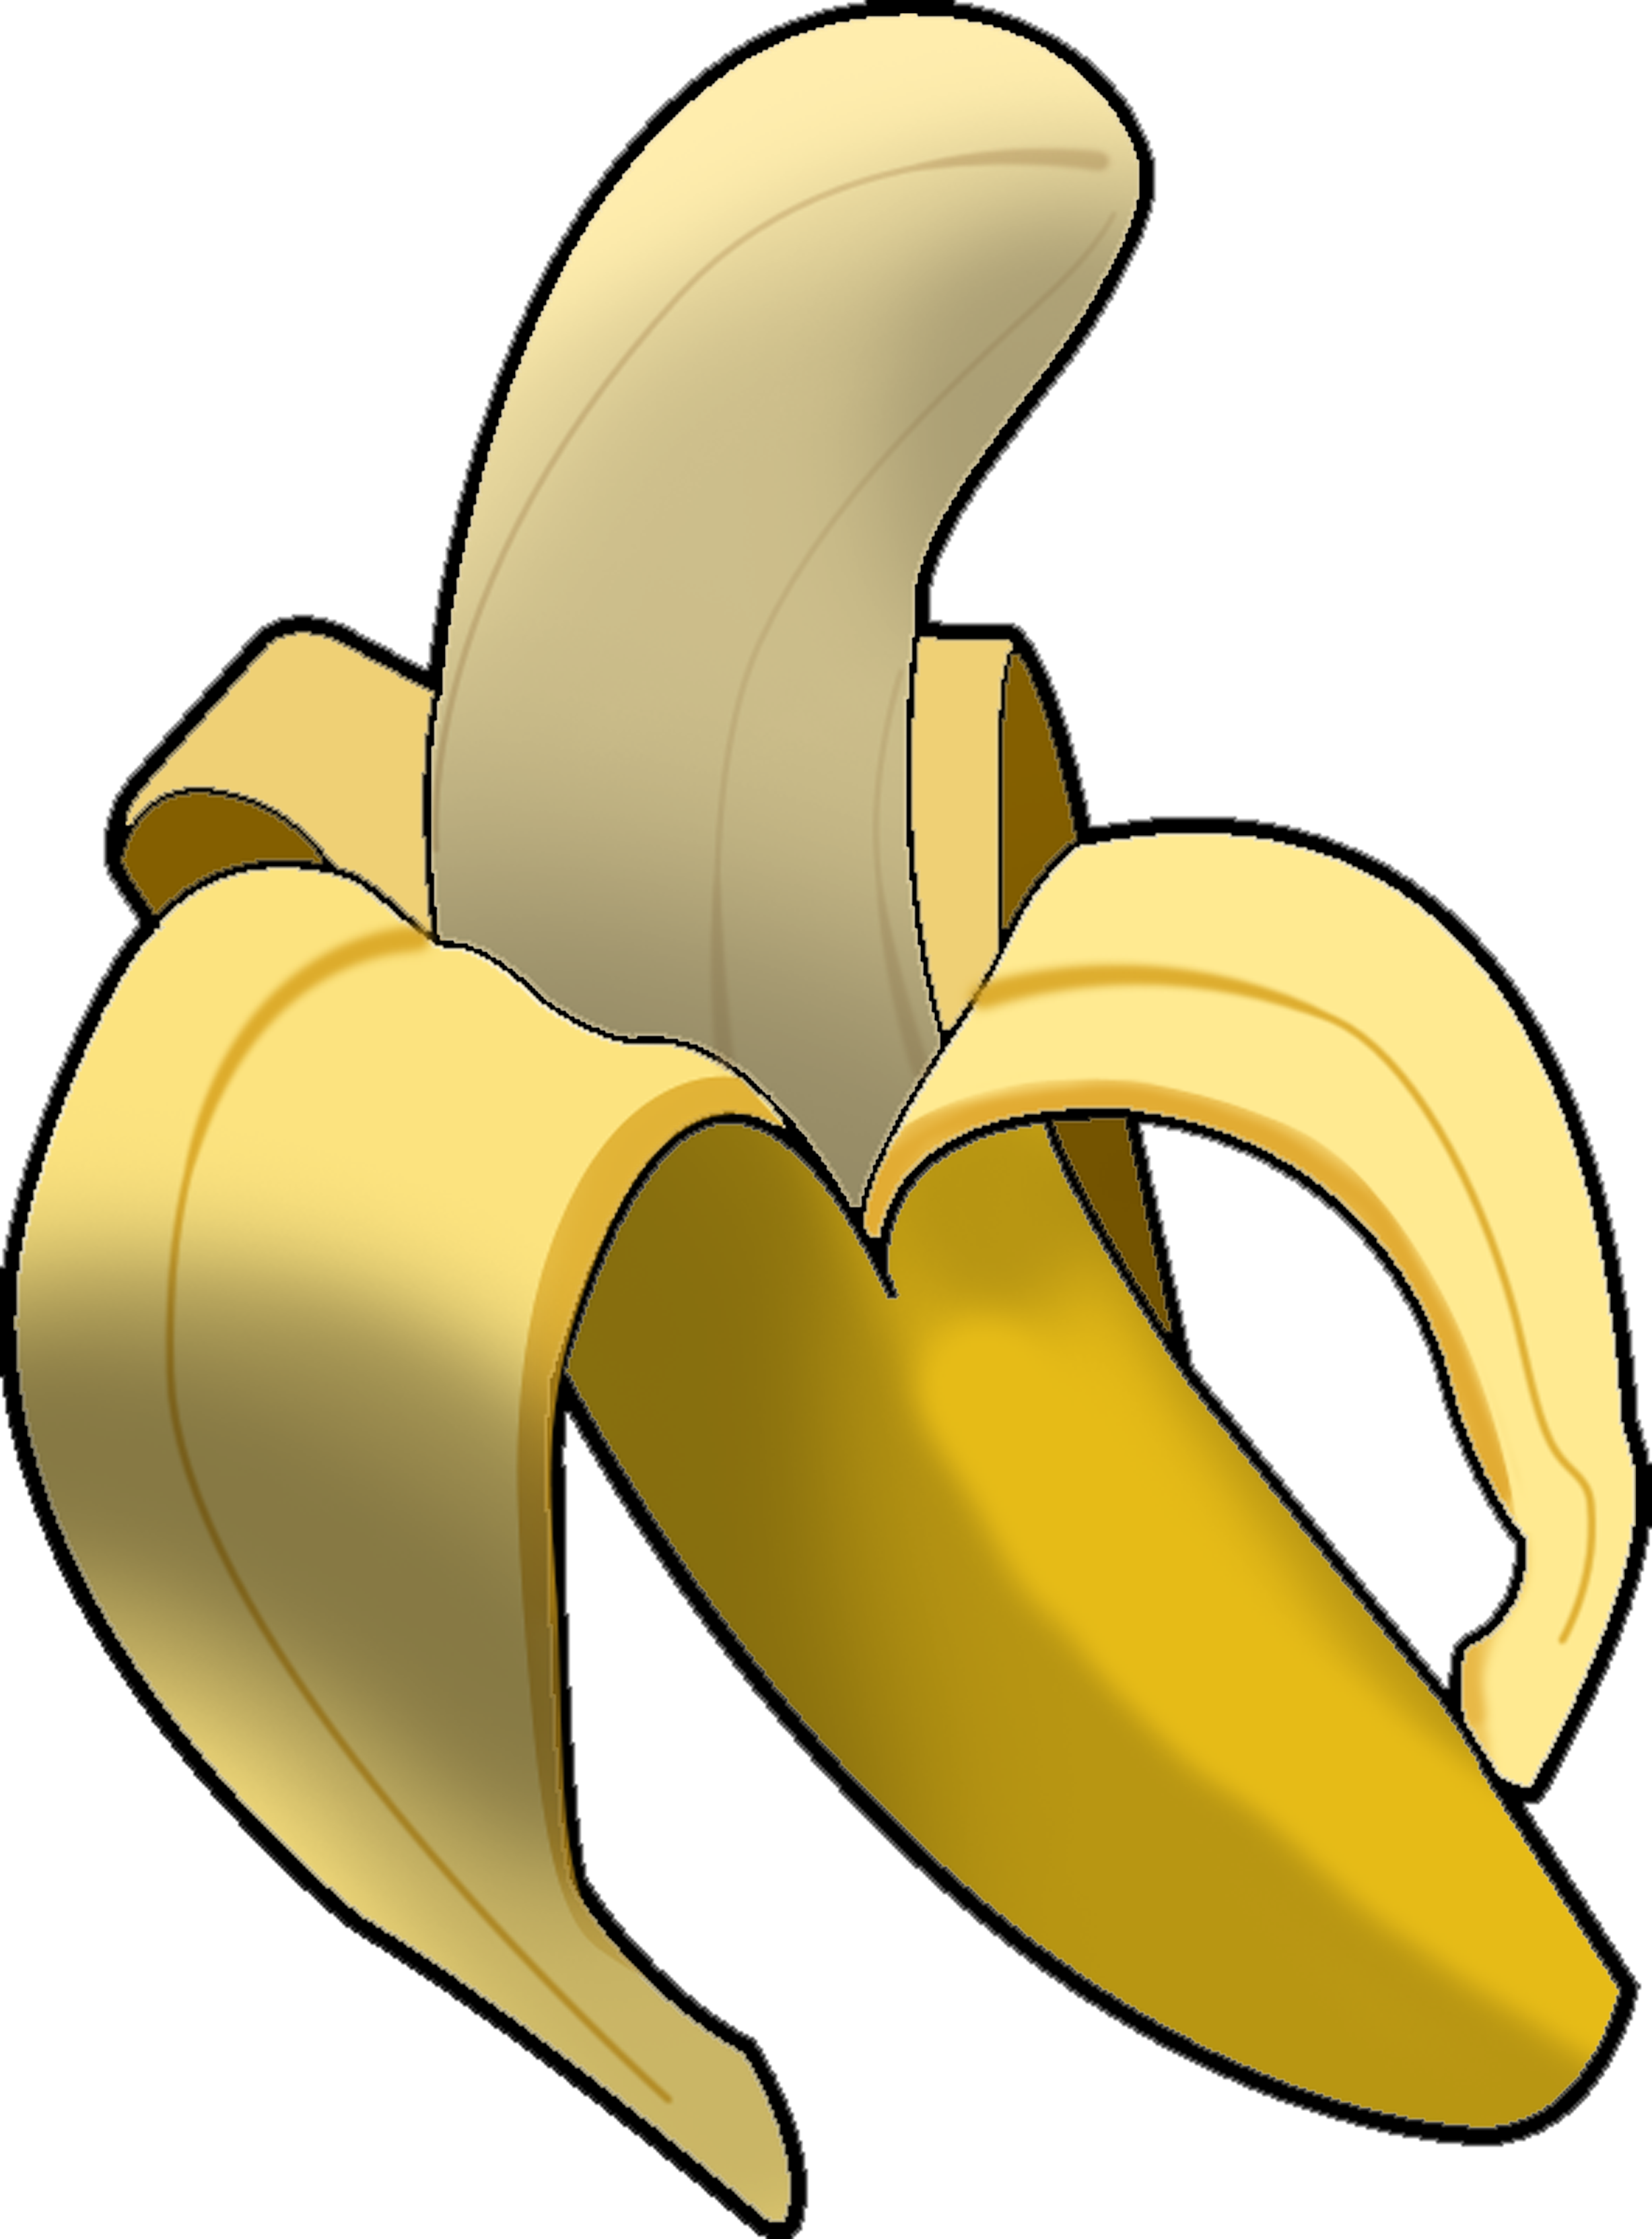 clipart banana - photo #44